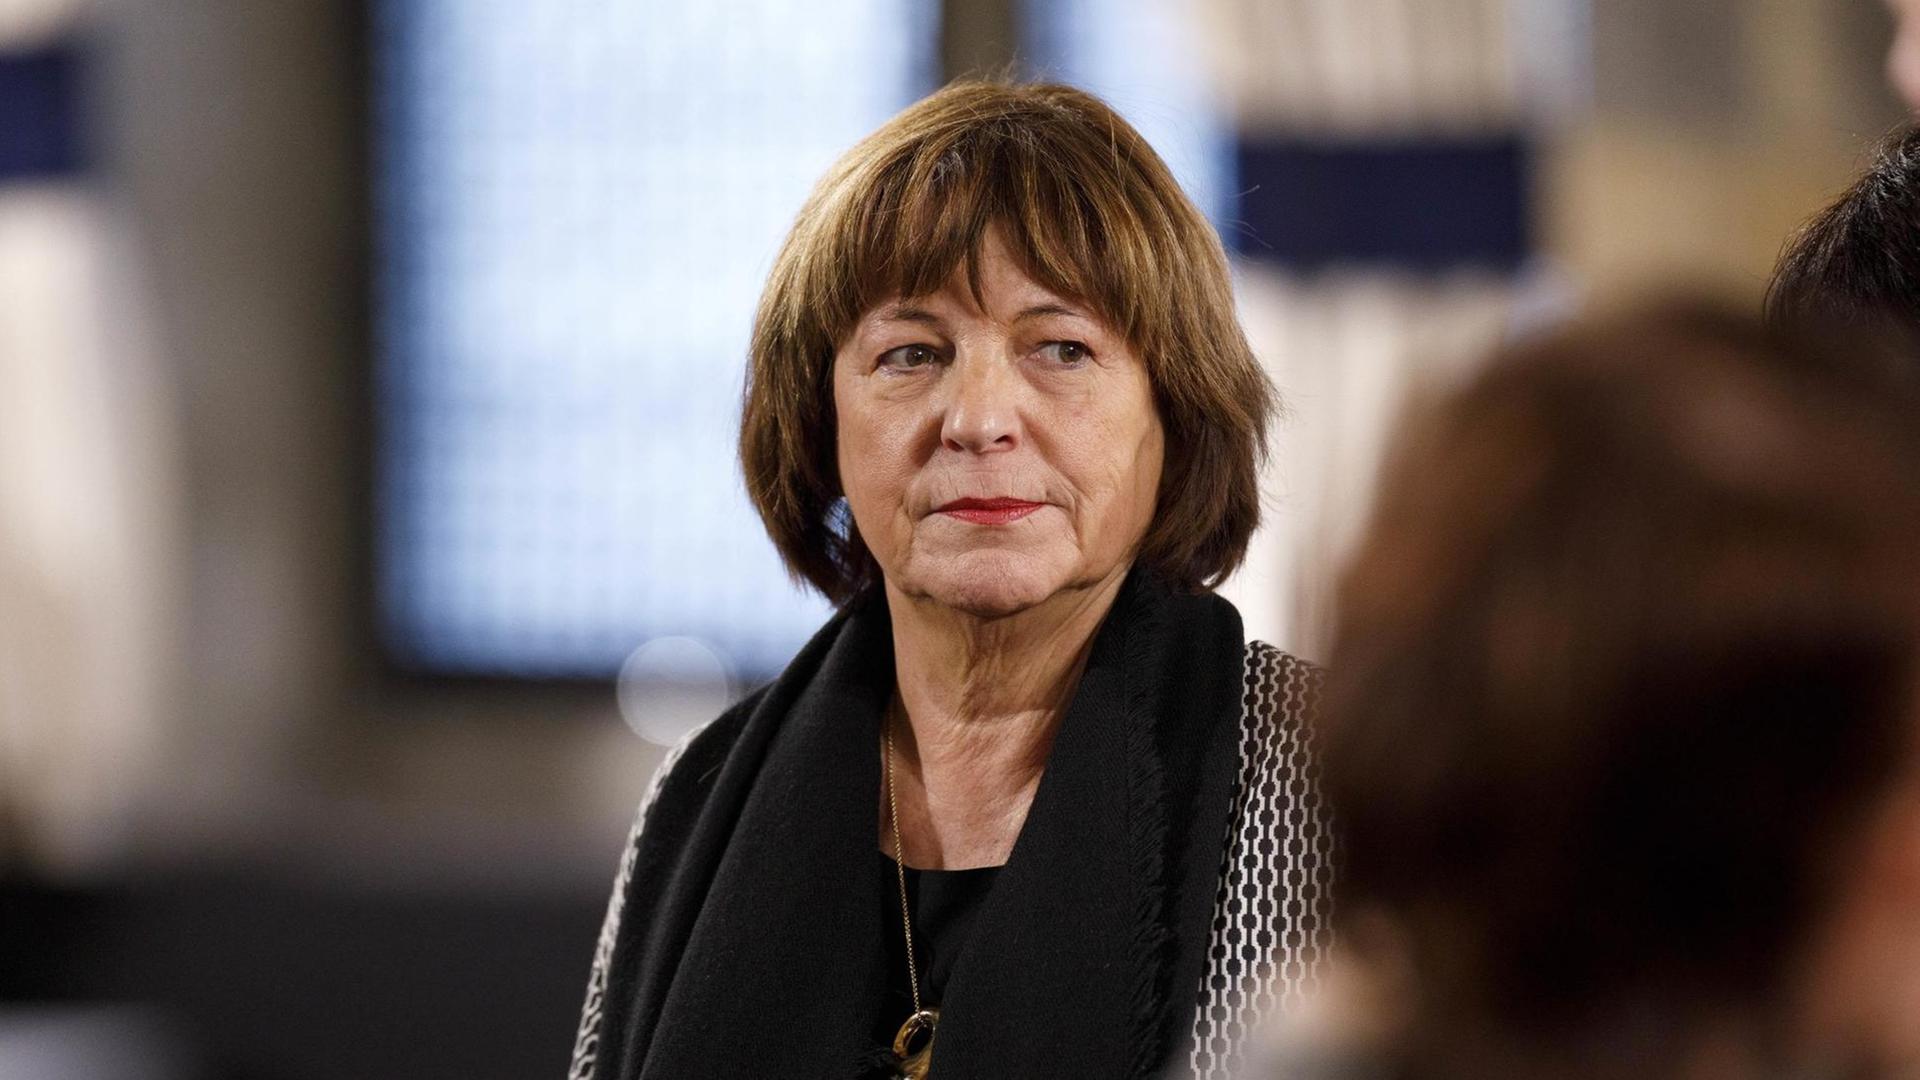 Die ehemalige SPD-Gesundheitsministerin und Vorsitzende der Bundesvereinigung Lebenshilfe Ulla Schmidt